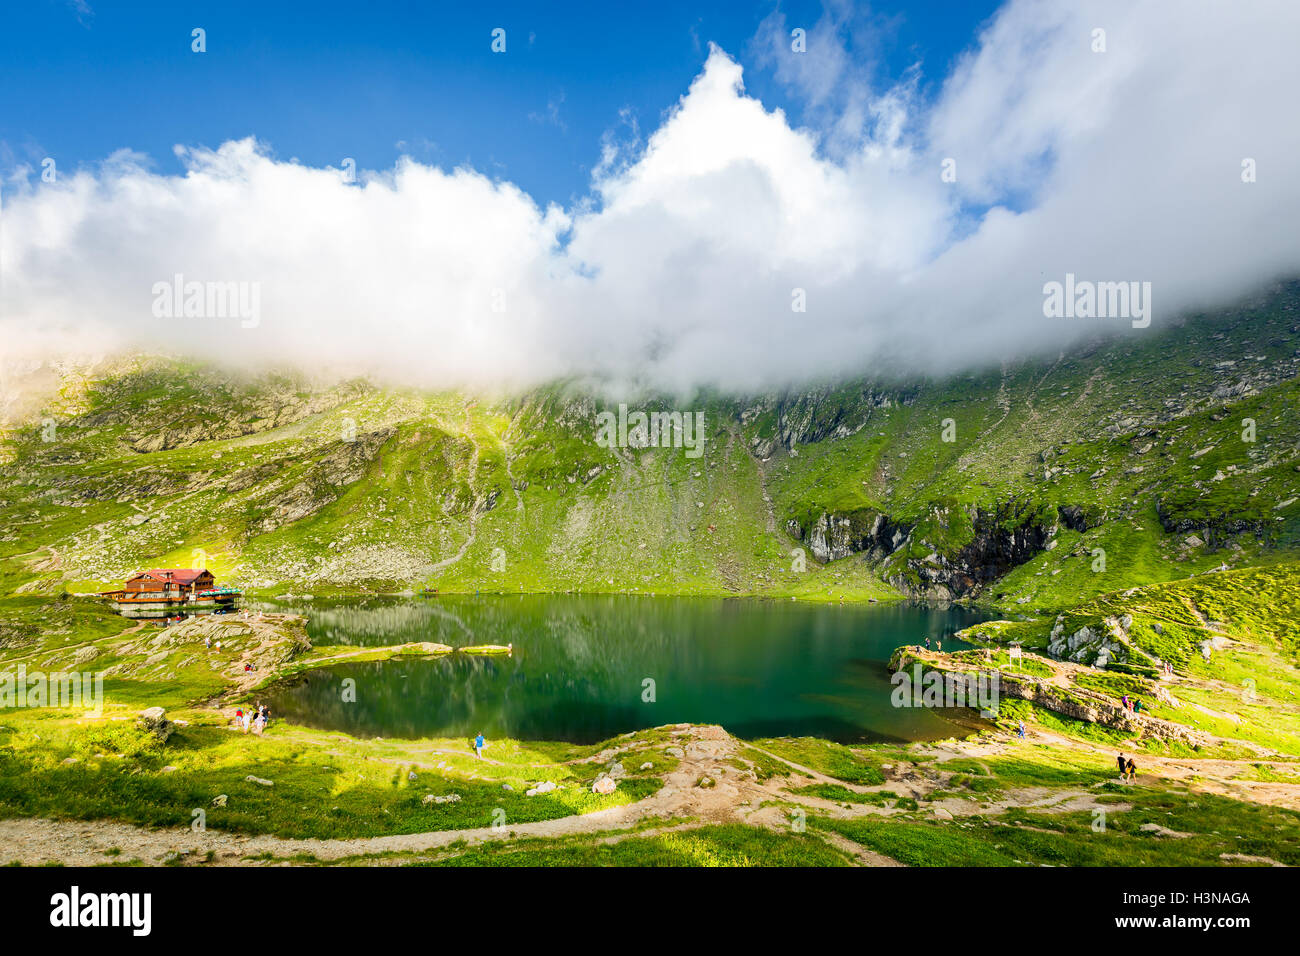 Balea lake and chalet in Fagaras mountains, Romania. Unidentifiable tourists enjoy the scenery. Stock Photo